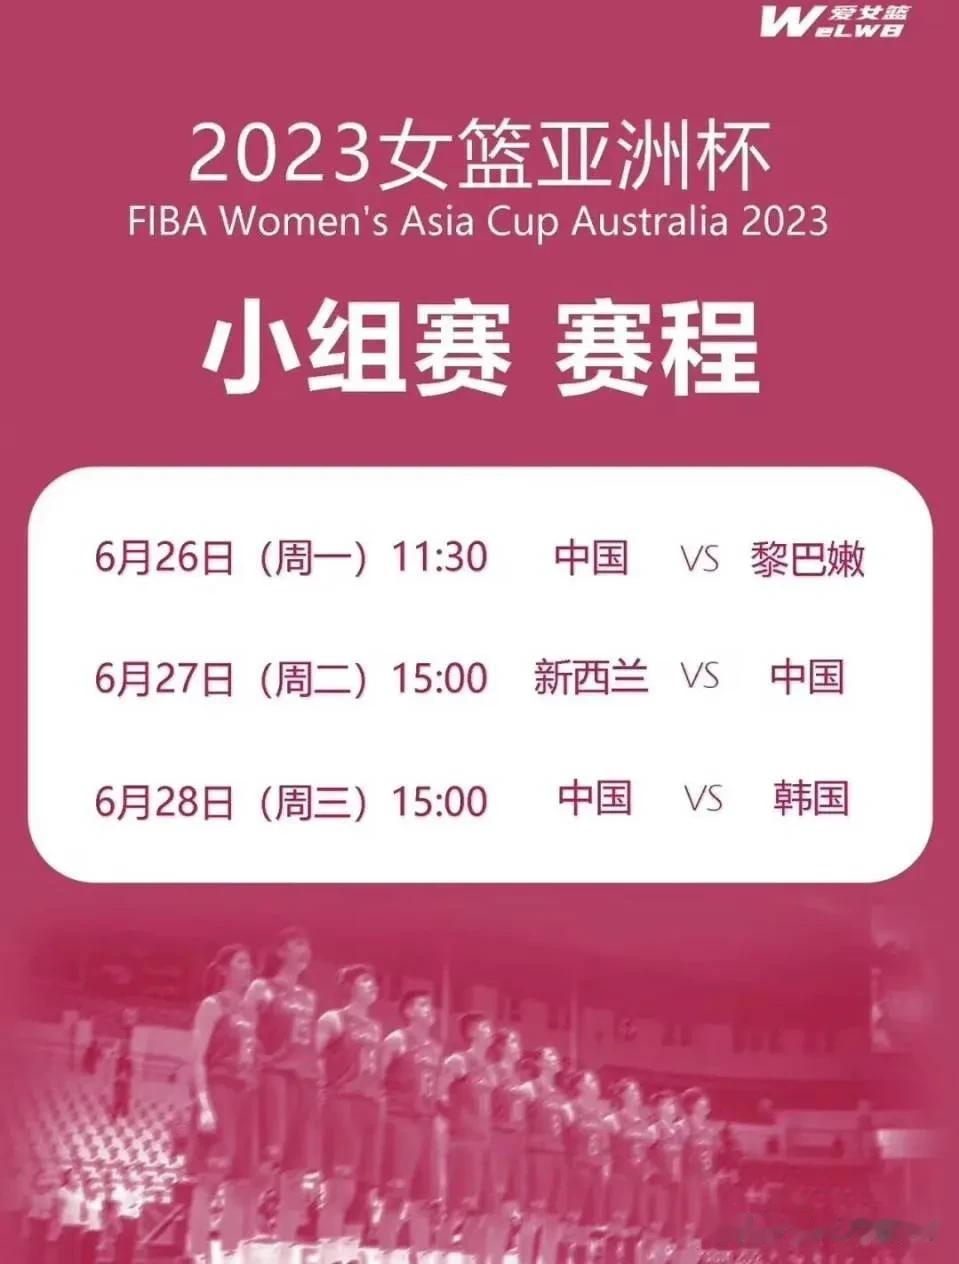 预测女篮亚洲杯中国队夺冠之路

小组赛
中国94:61黎巴嫩
中国83:79新西(1)